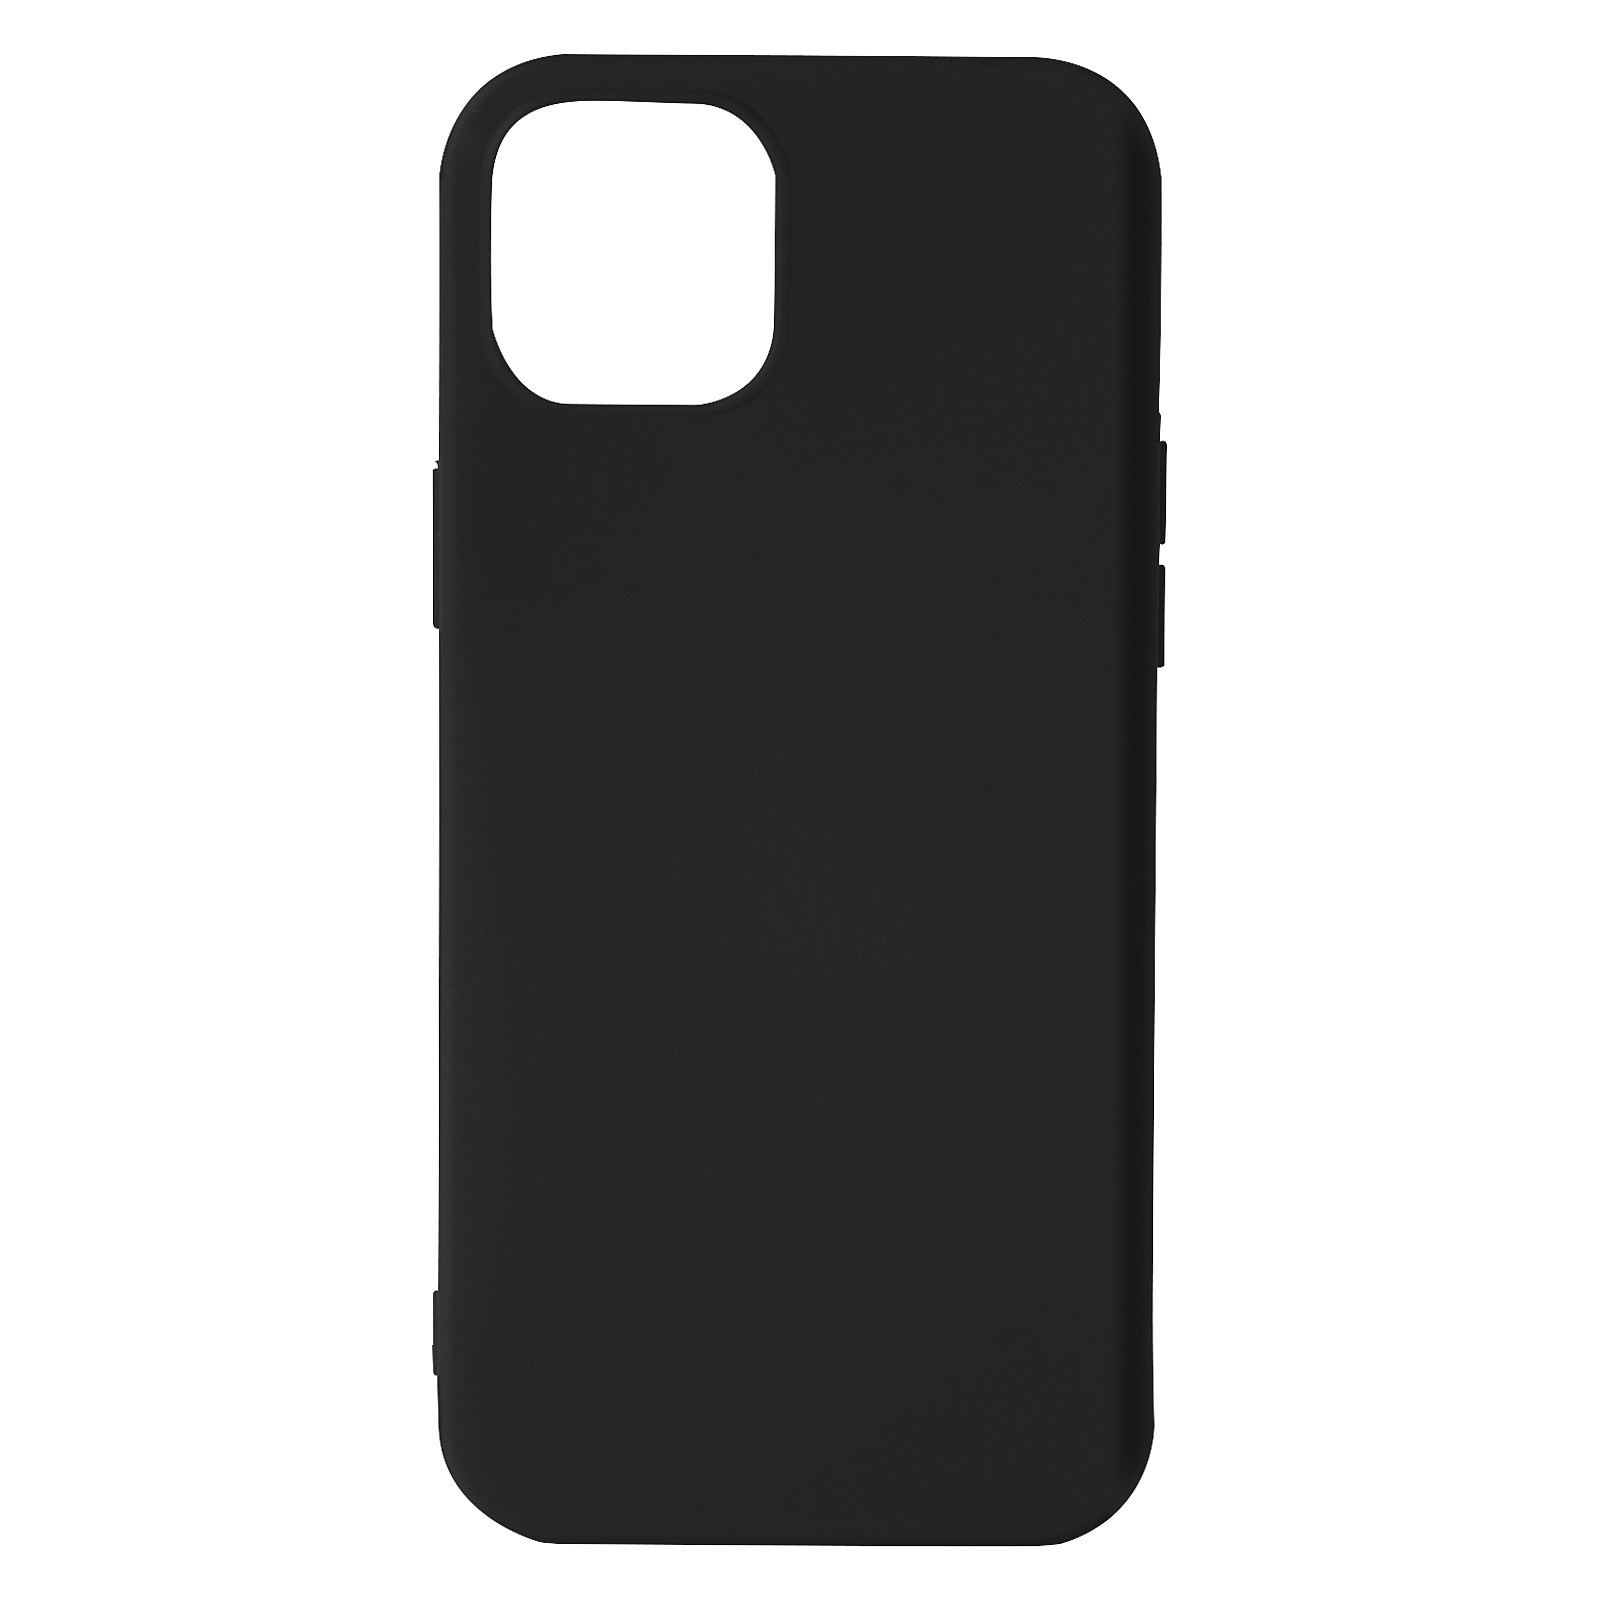 Avizar Coque pour iPhone 13 Mini Silicone Semi-rigide Finition Soft-touch Fine Noir - Coque telephone Avizar